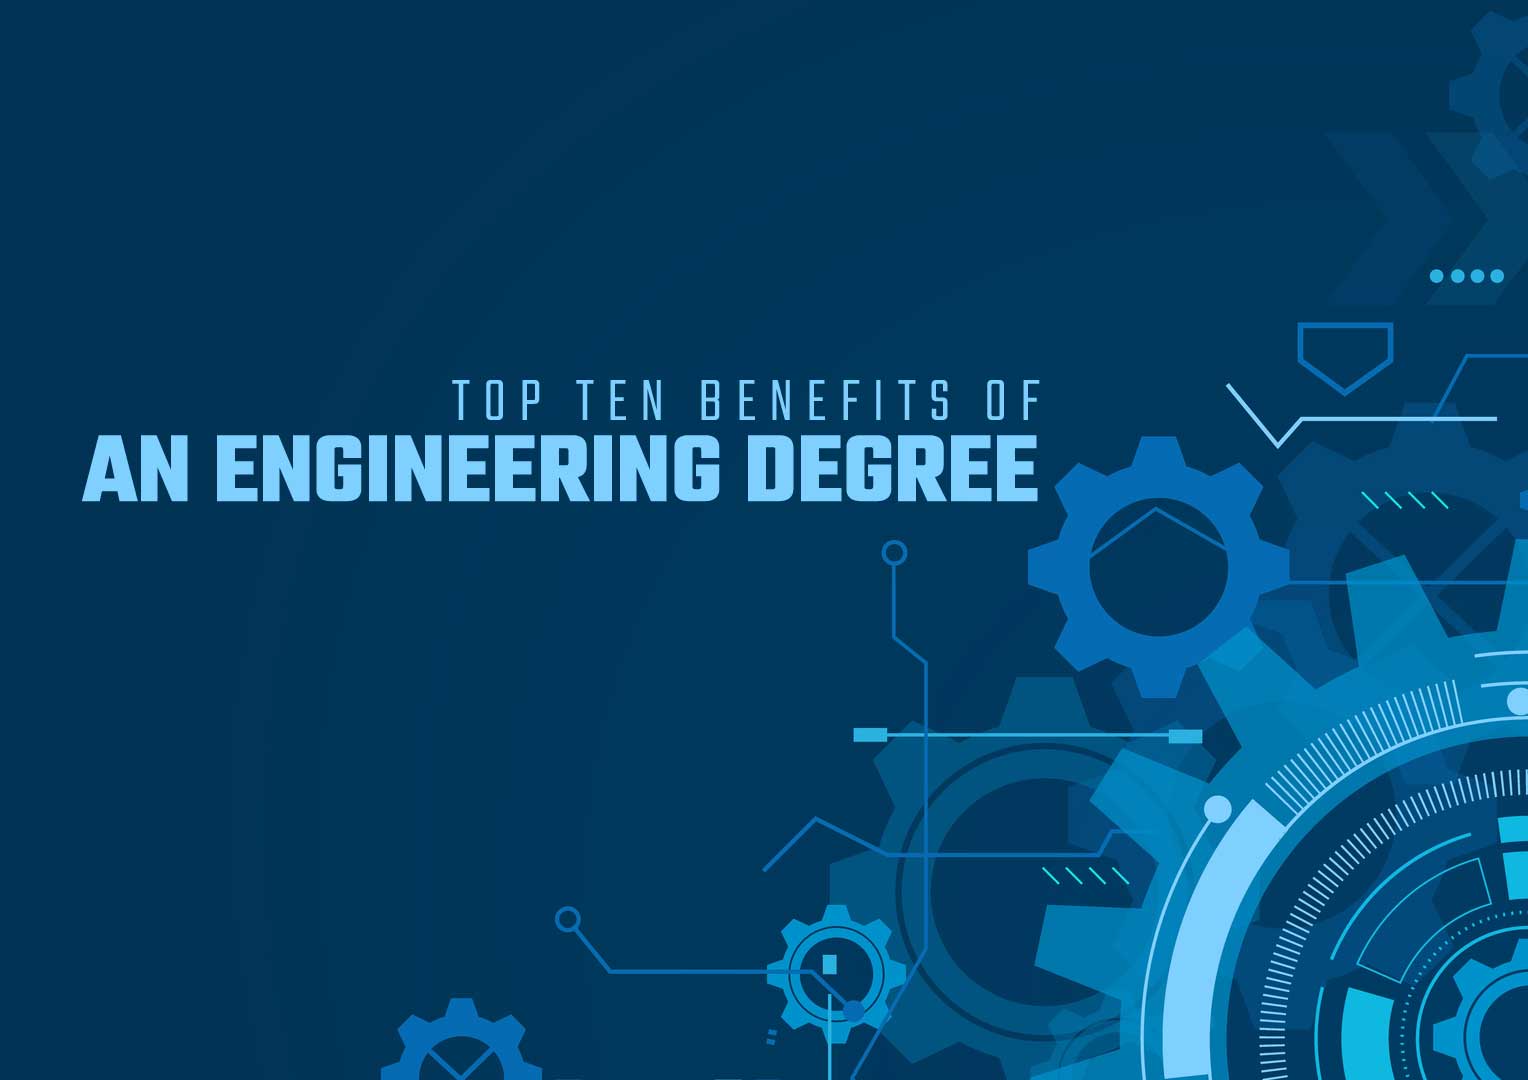 Top Ten Benefits of an Engineering Degree